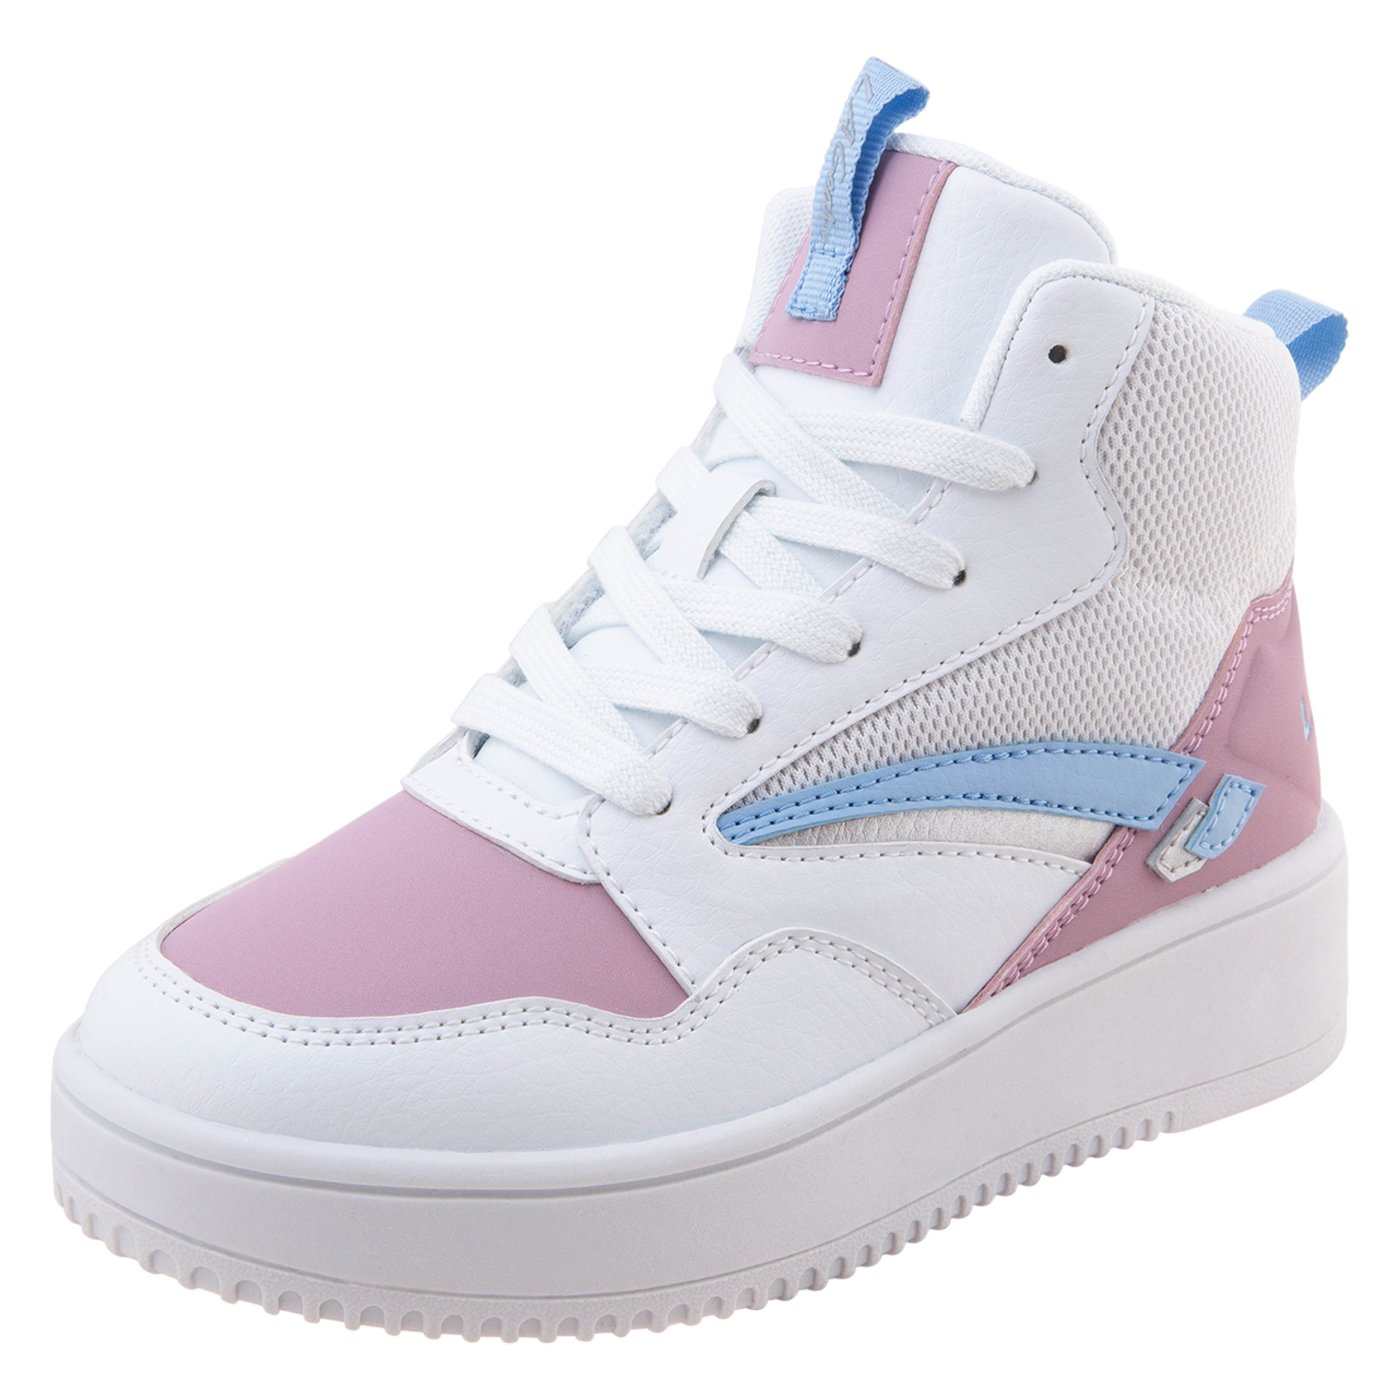 Payless_LA Gear Girl_s Hoops Court Sneaker_P1,950_P1,560.jpg